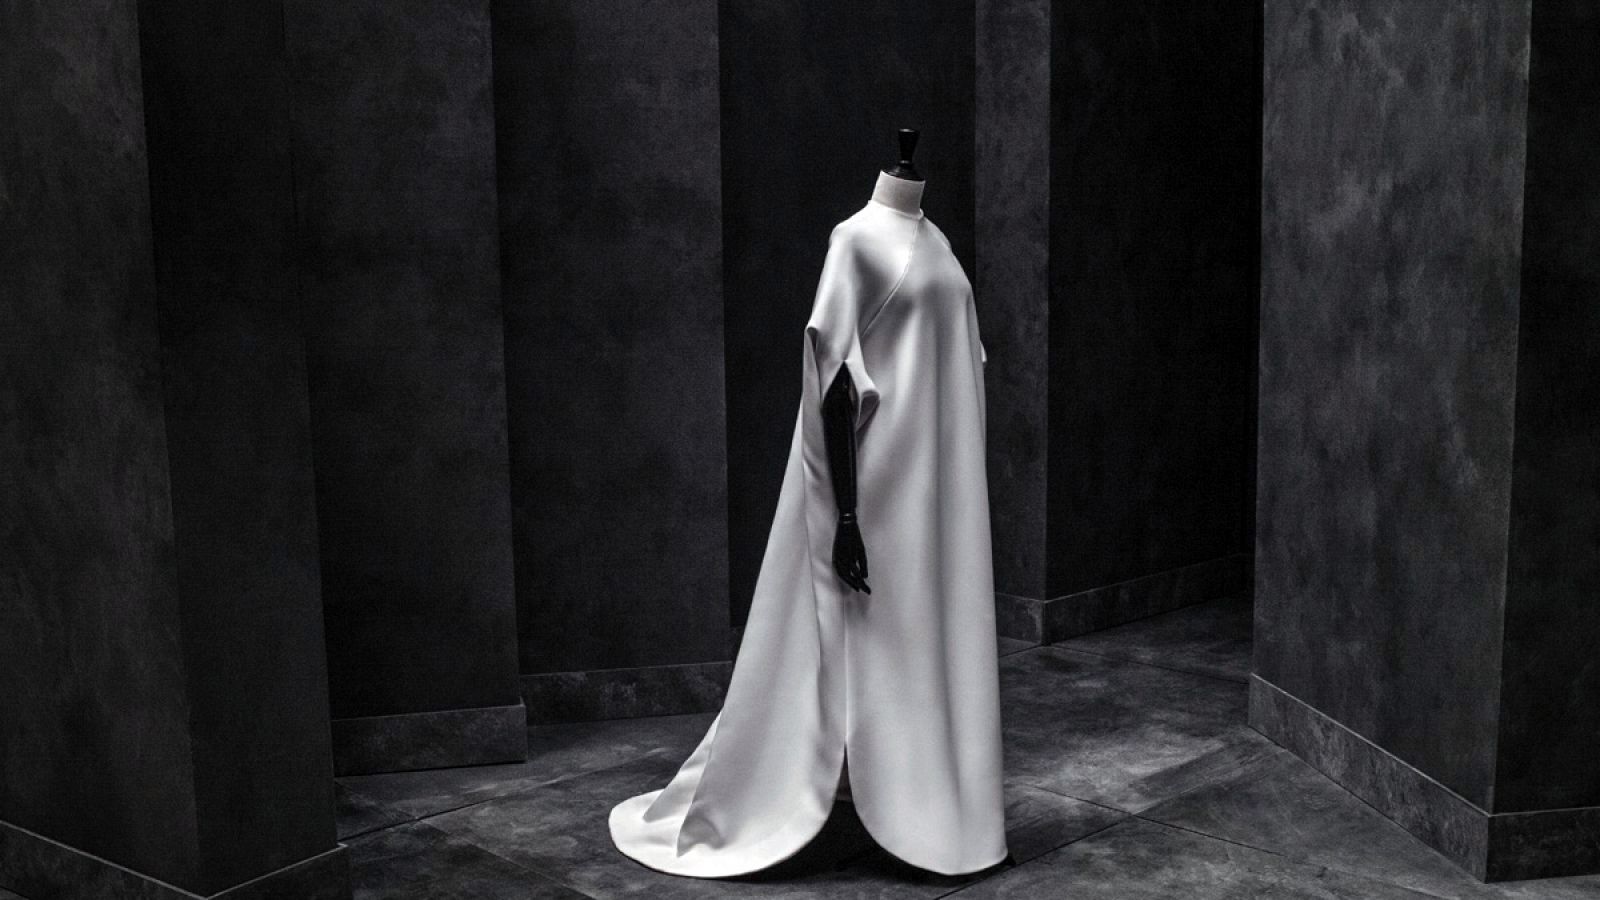 Vestido de novia caftán de algodón (1967). Colección de Ana molins.